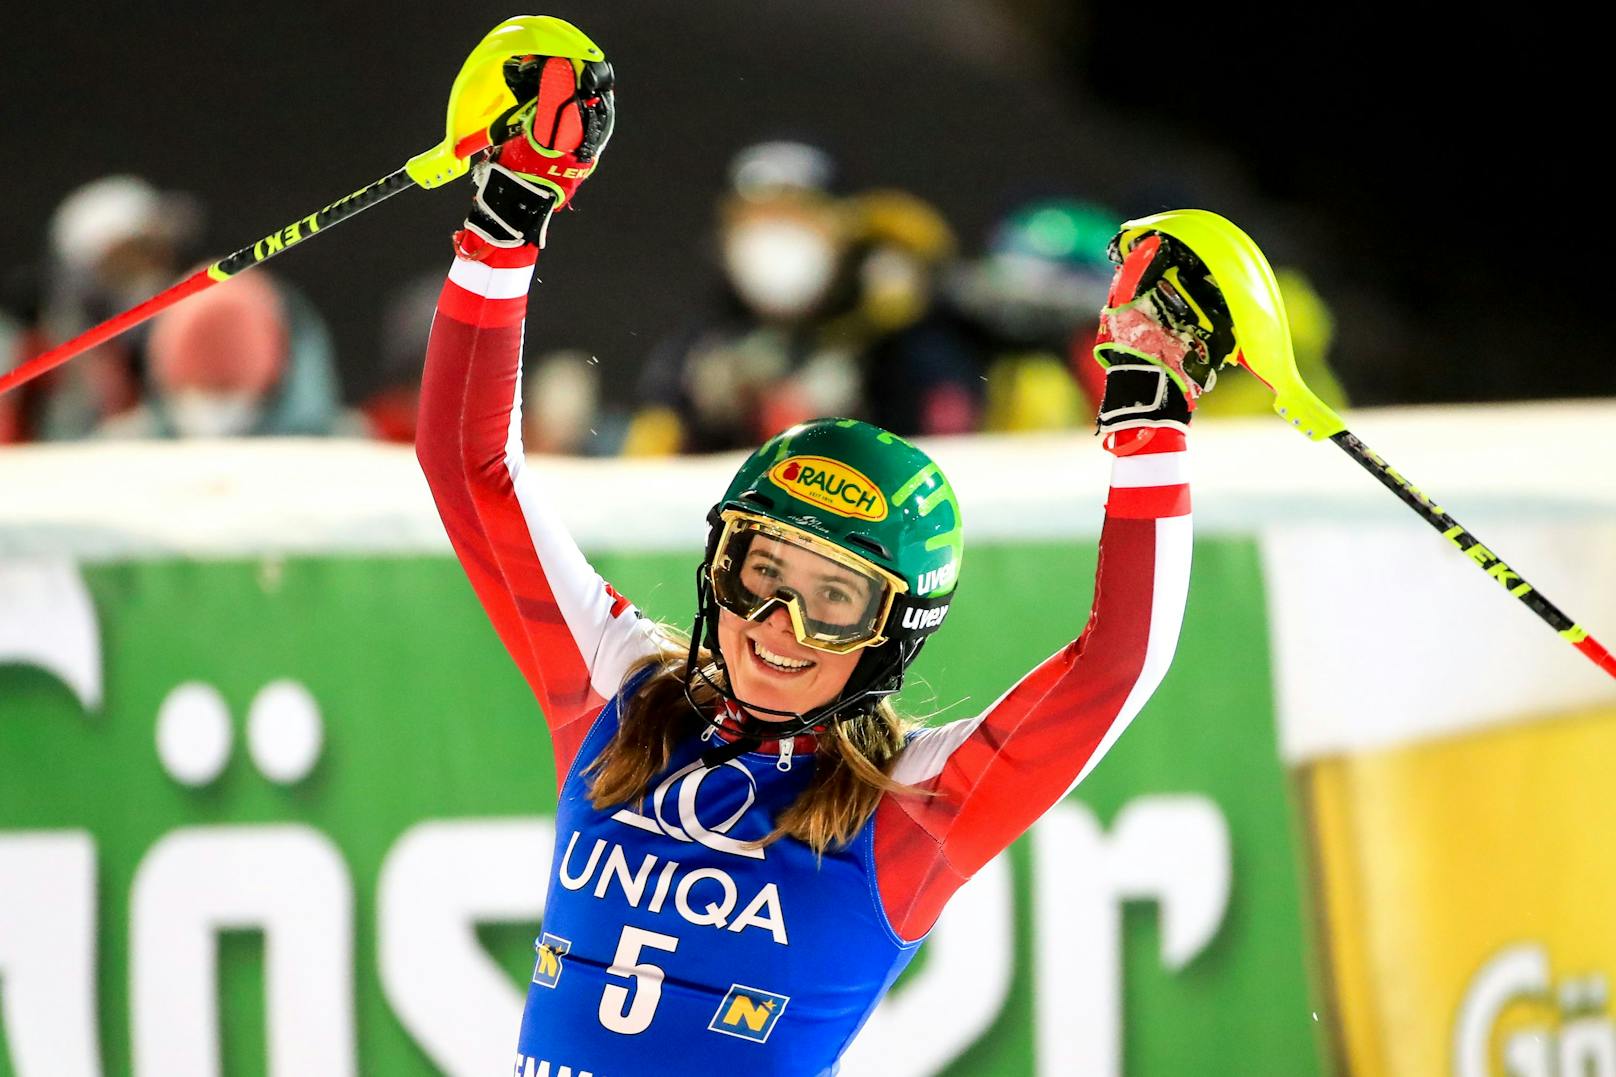 Elf Hundertstel fehlten Katharina Liensberger am Semmering zu ihrem ersten Weltcupsieg. Den Slalom gewann Michelle Gisin. Der Riesentorlauf am Tag zuvor wurde wegen zu starkem Wind nach Lauf eins abgebrochen und nicht gewertet.